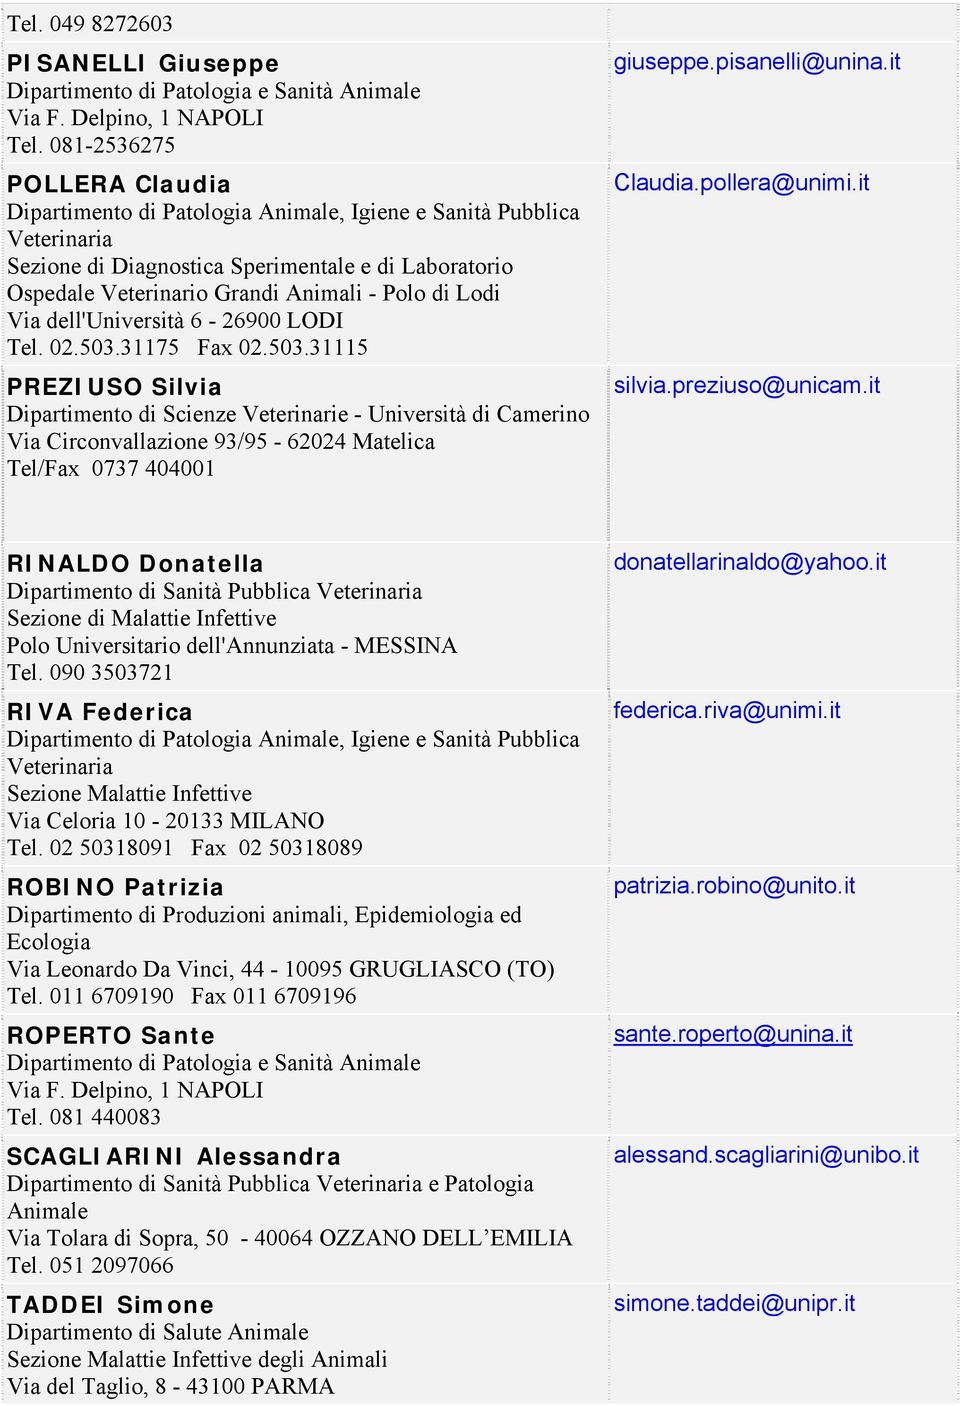 31175 Fax 02.503.31115 PREZIUSO Silvia Dipartimento di Scienze Veterinarie - Università di Camerino Via Circonvallazione 93/95-62024 Matelica Tel/Fax 0737 404001 giuseppe.pisanelli@unina.it Claudia.